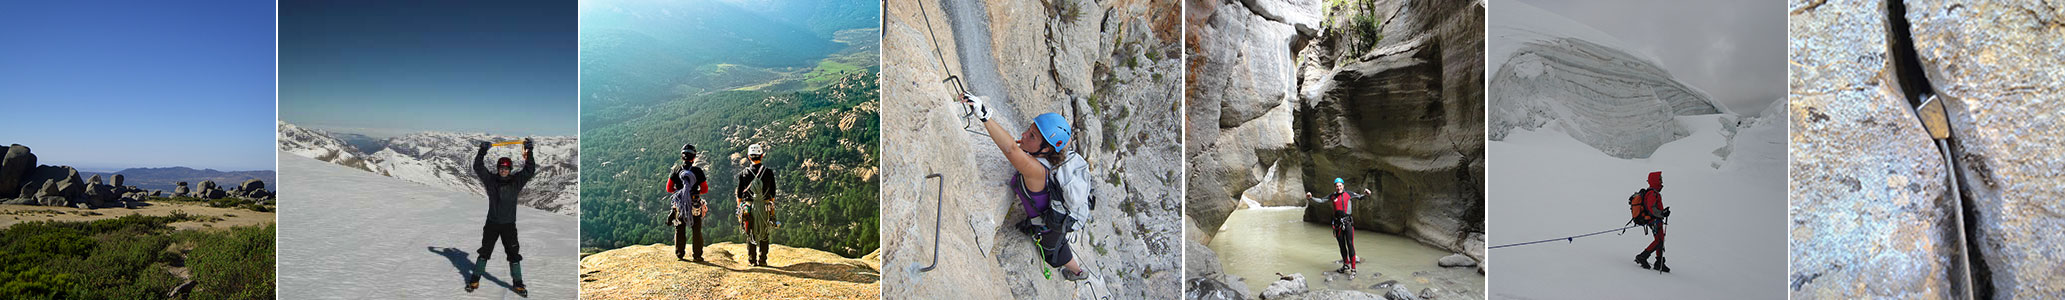 Mountaineering Activities